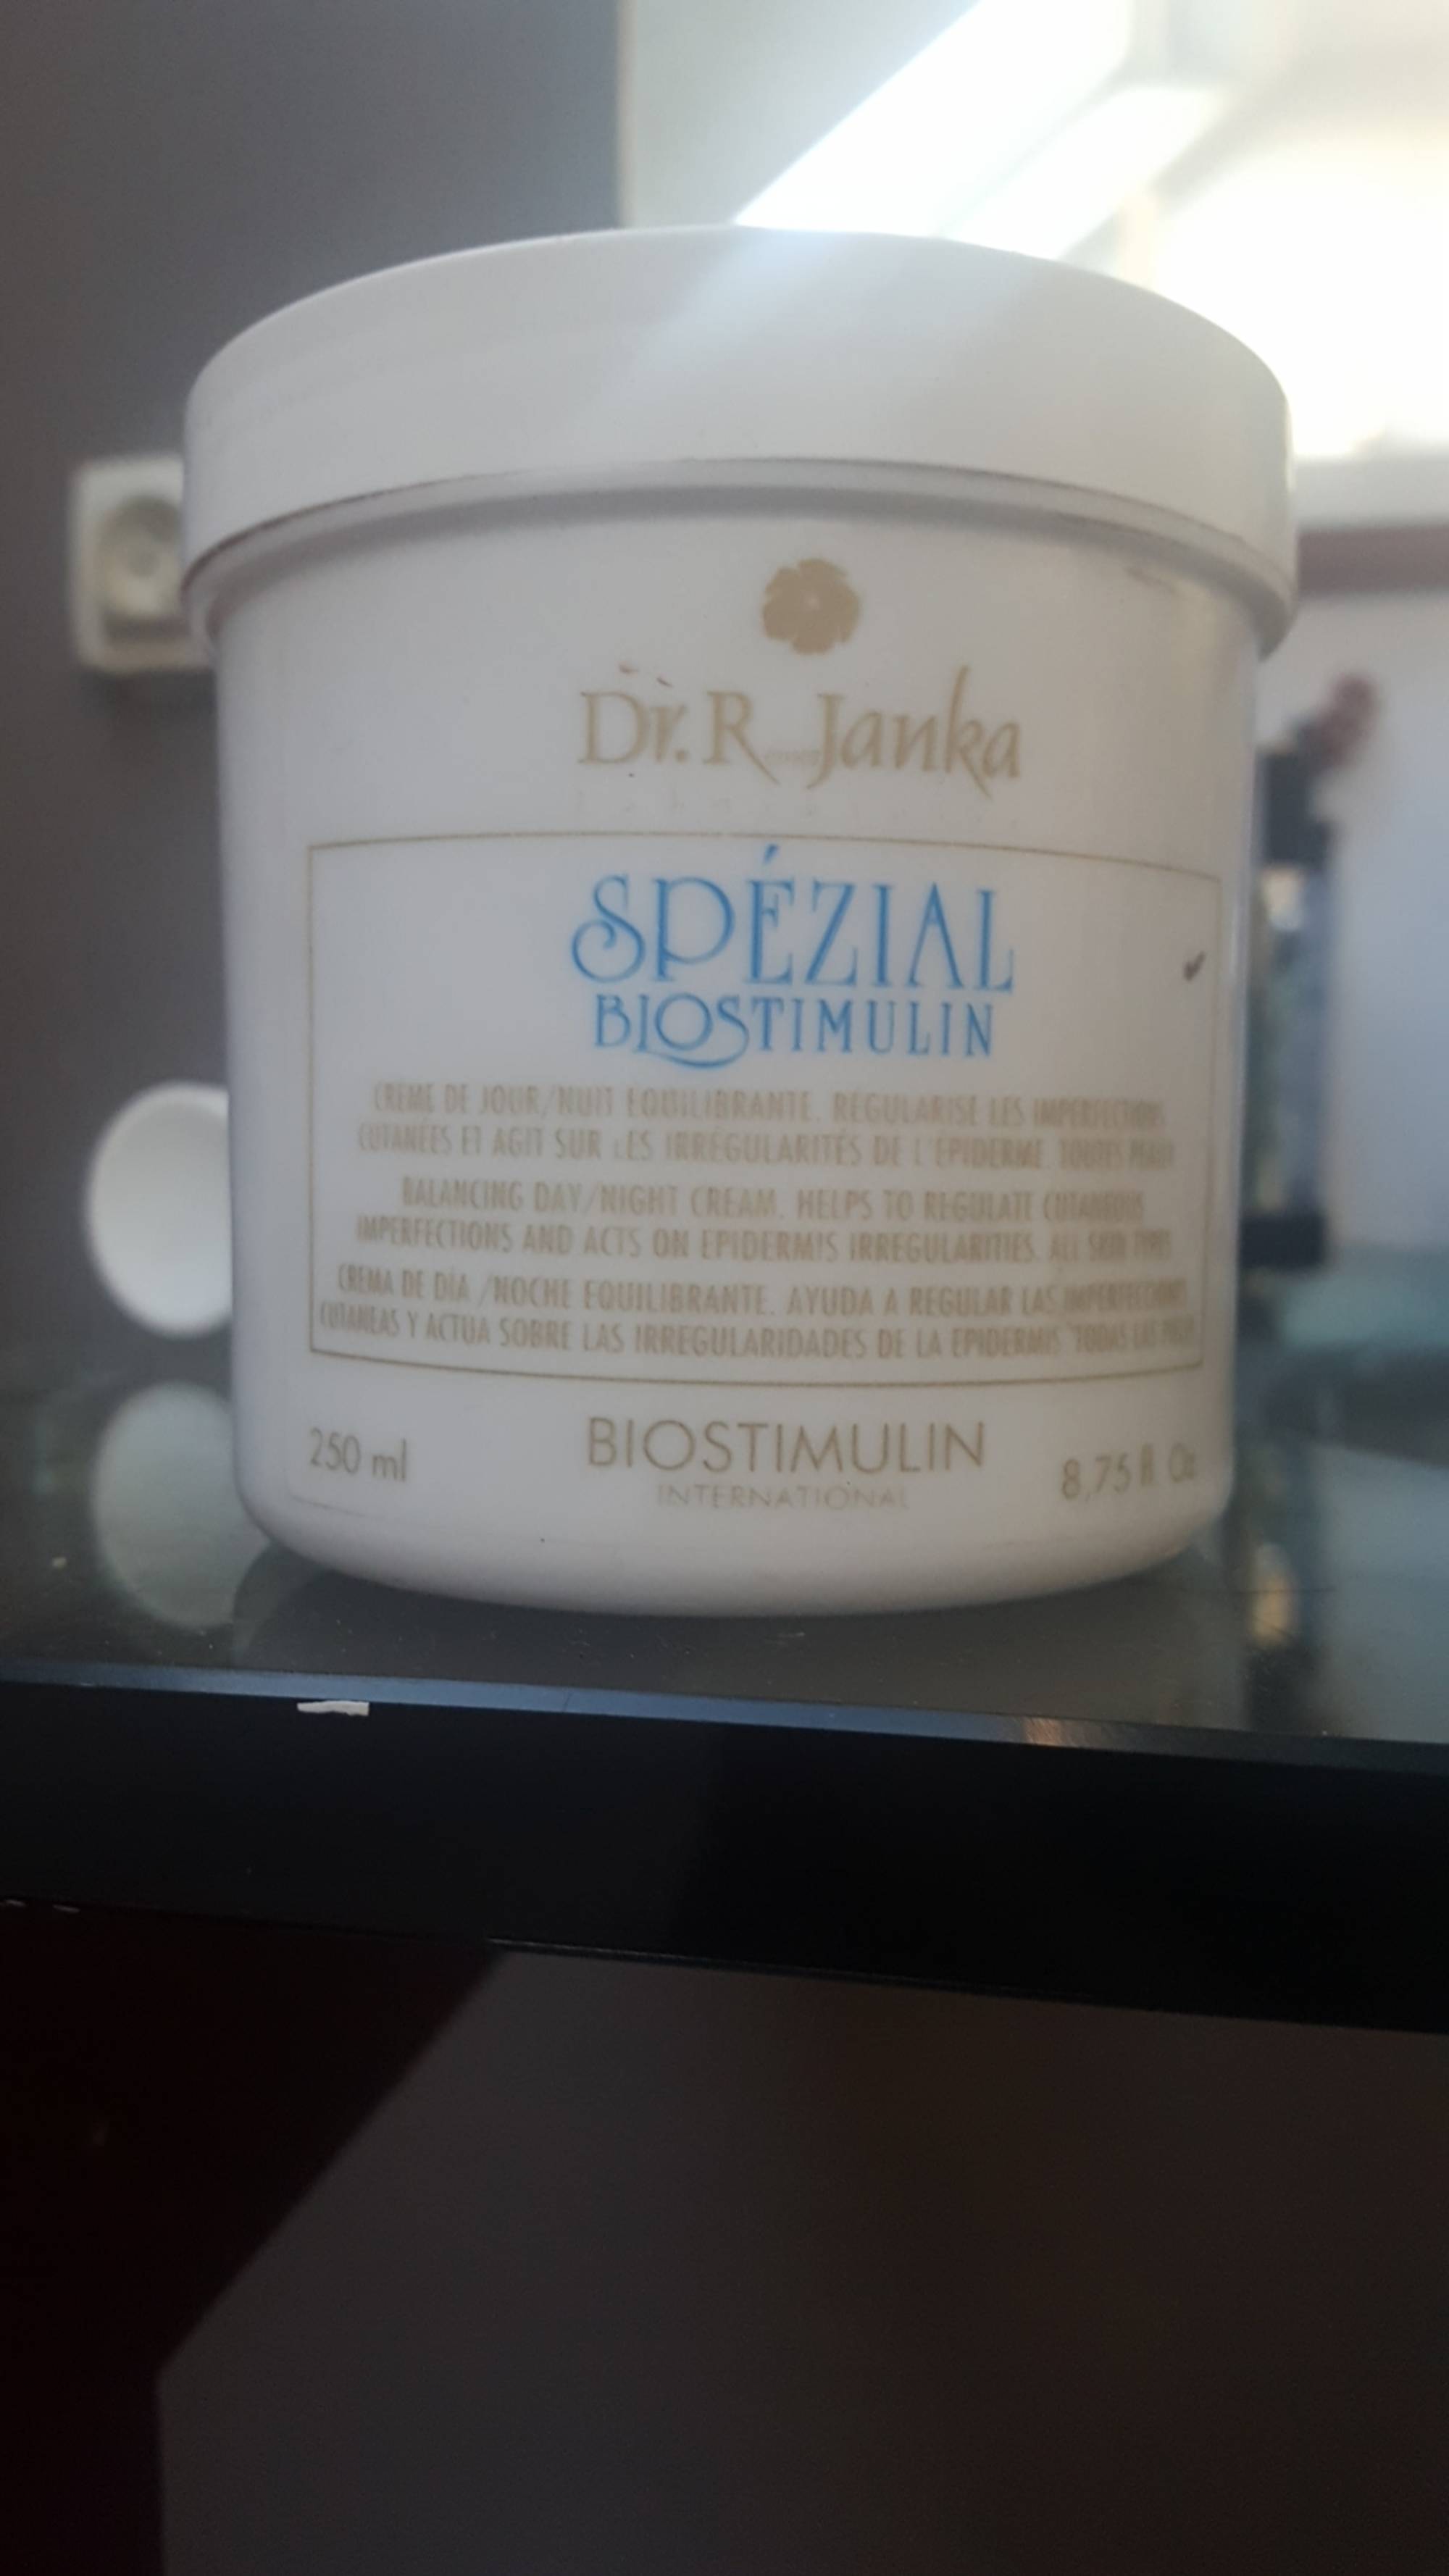 DR. JANKA - Spézial biostimulin - Crème de jour/nuit équilibrante